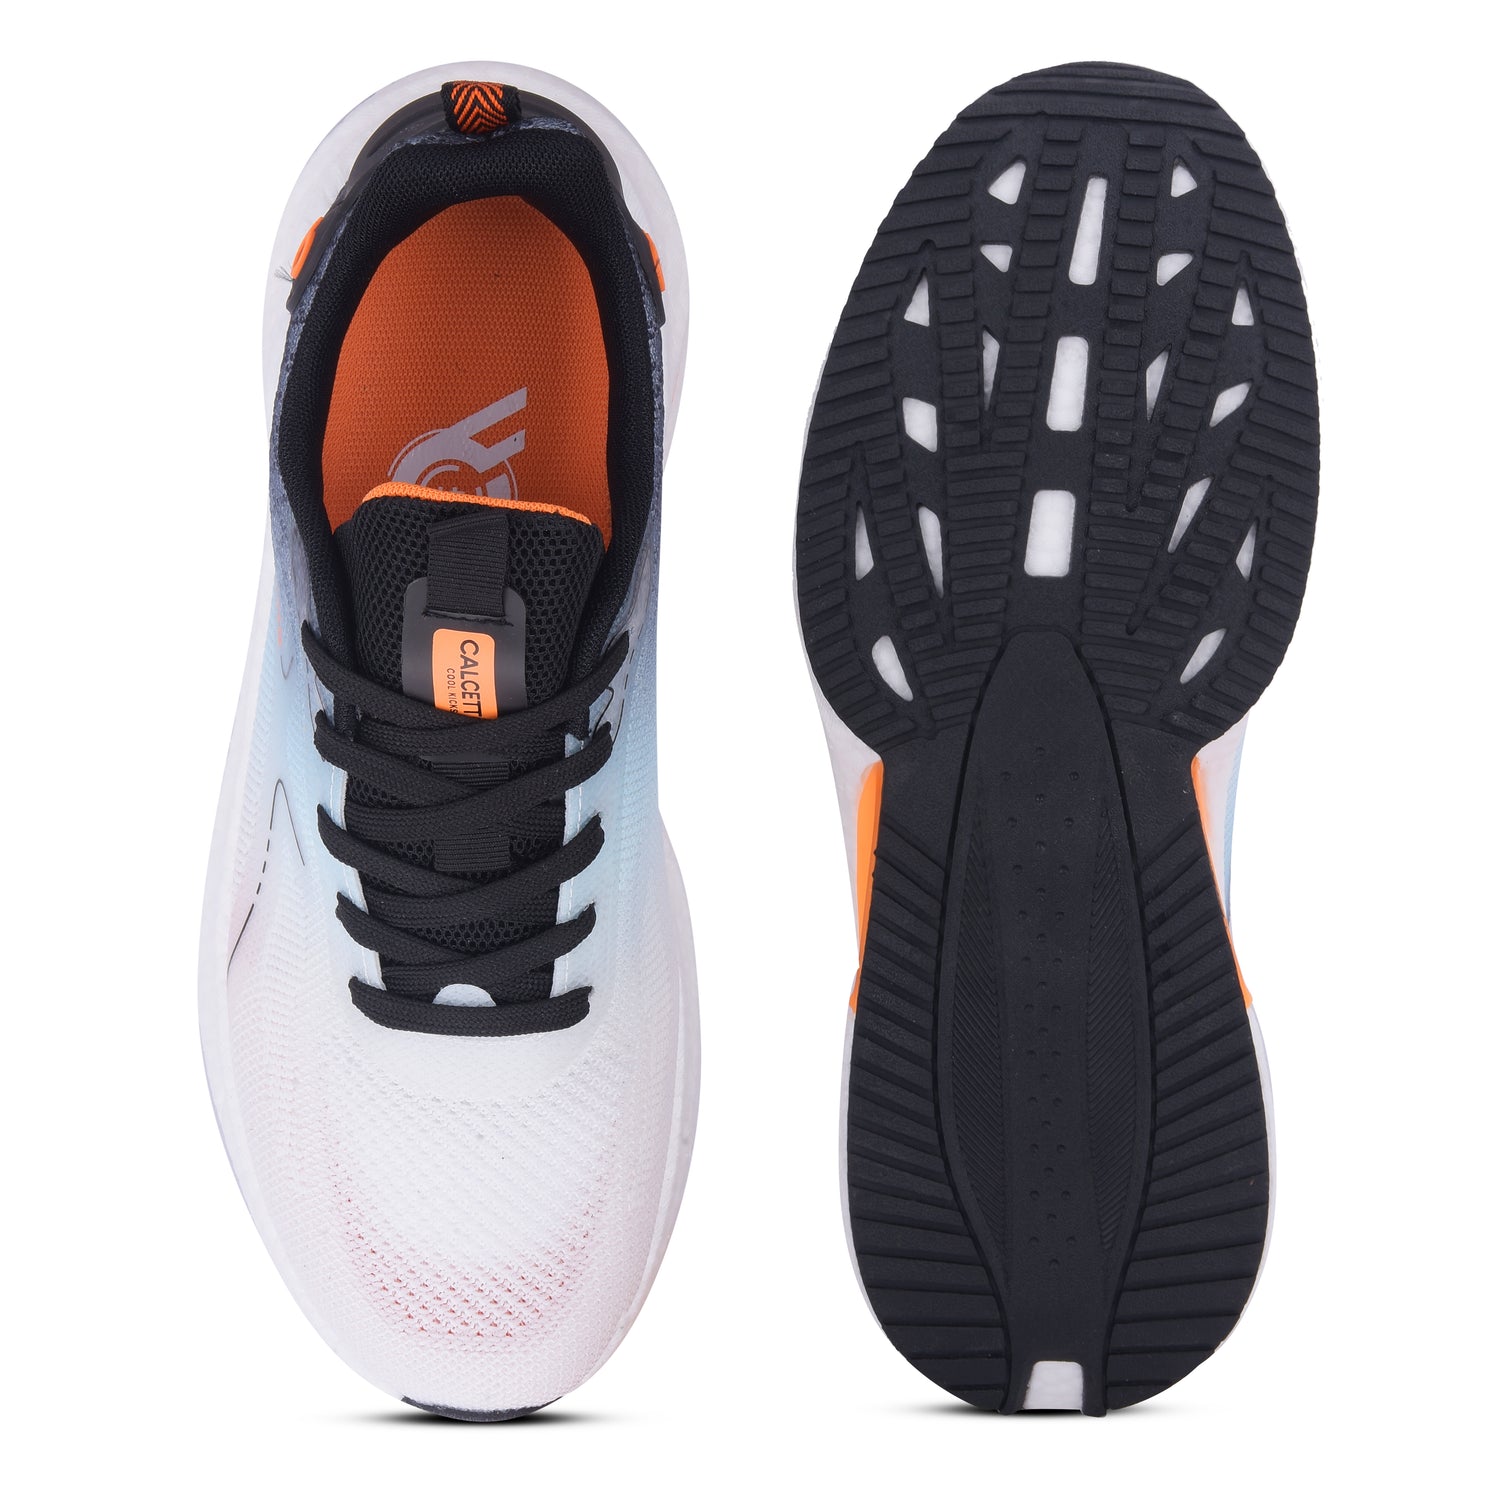 Calcetto CLT-1014 White Black Casual Shoe For Men